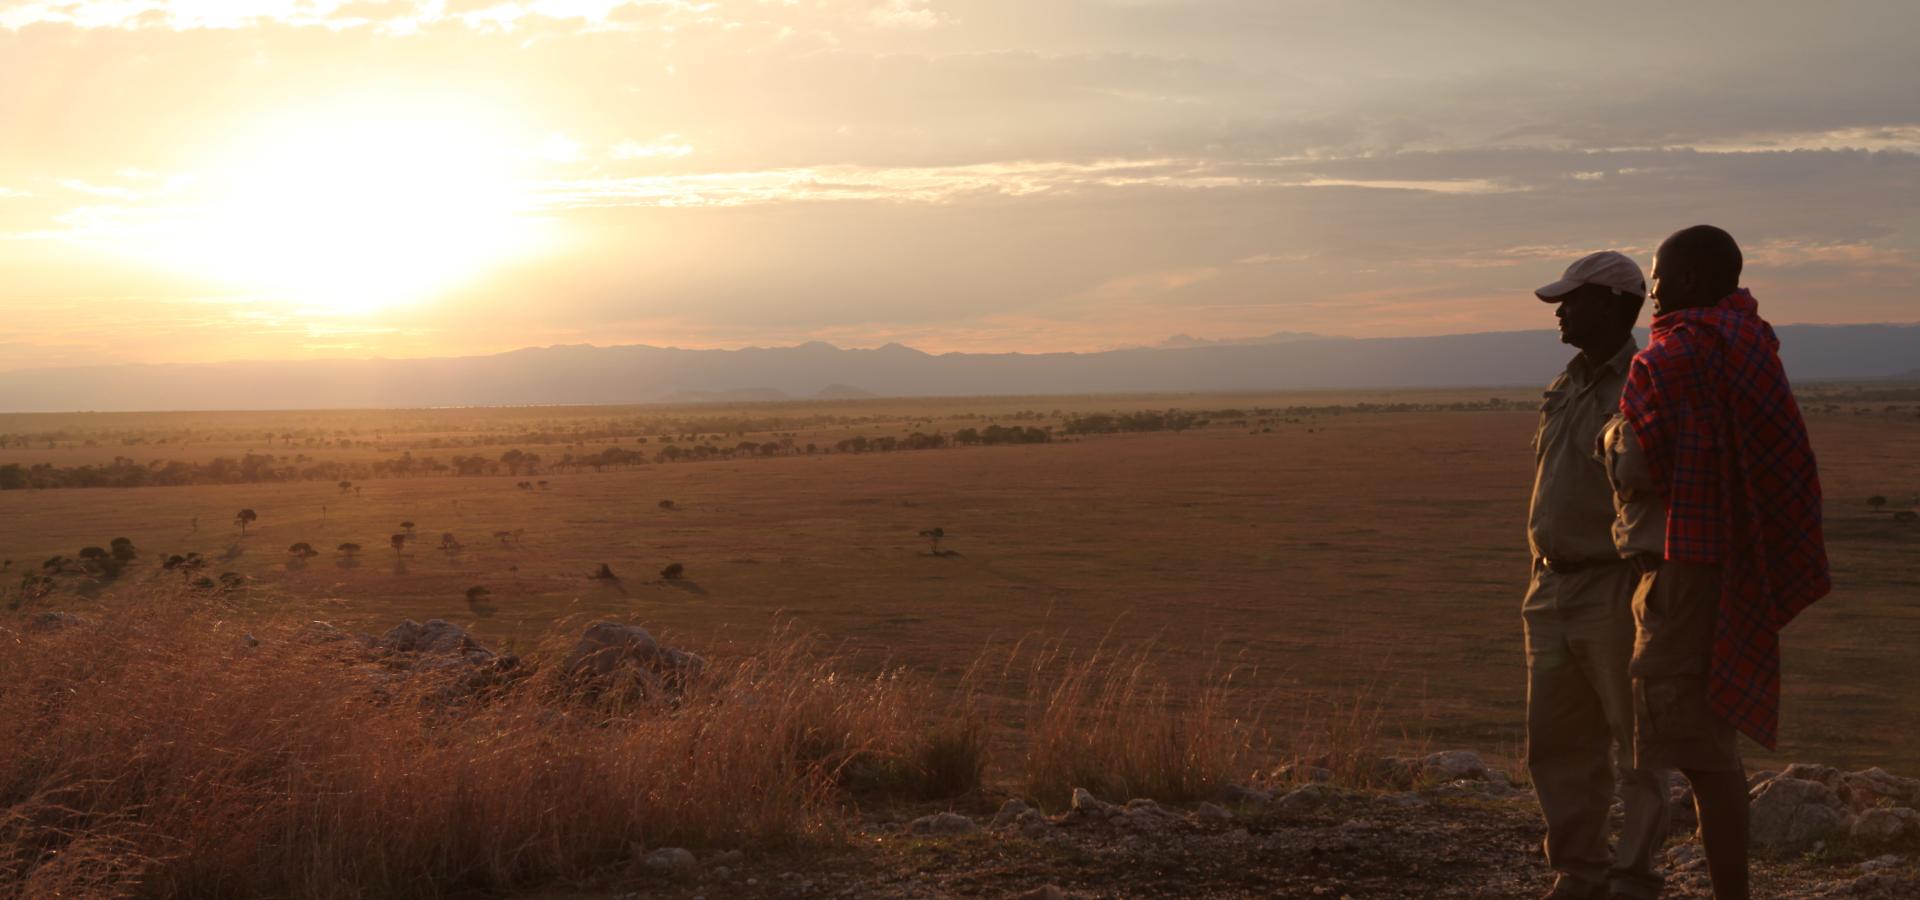 Lassen Sie in den Naturparadiesen Tanzanias wunderschöne afrikanische Sonnenuntergänge auf sich wirken